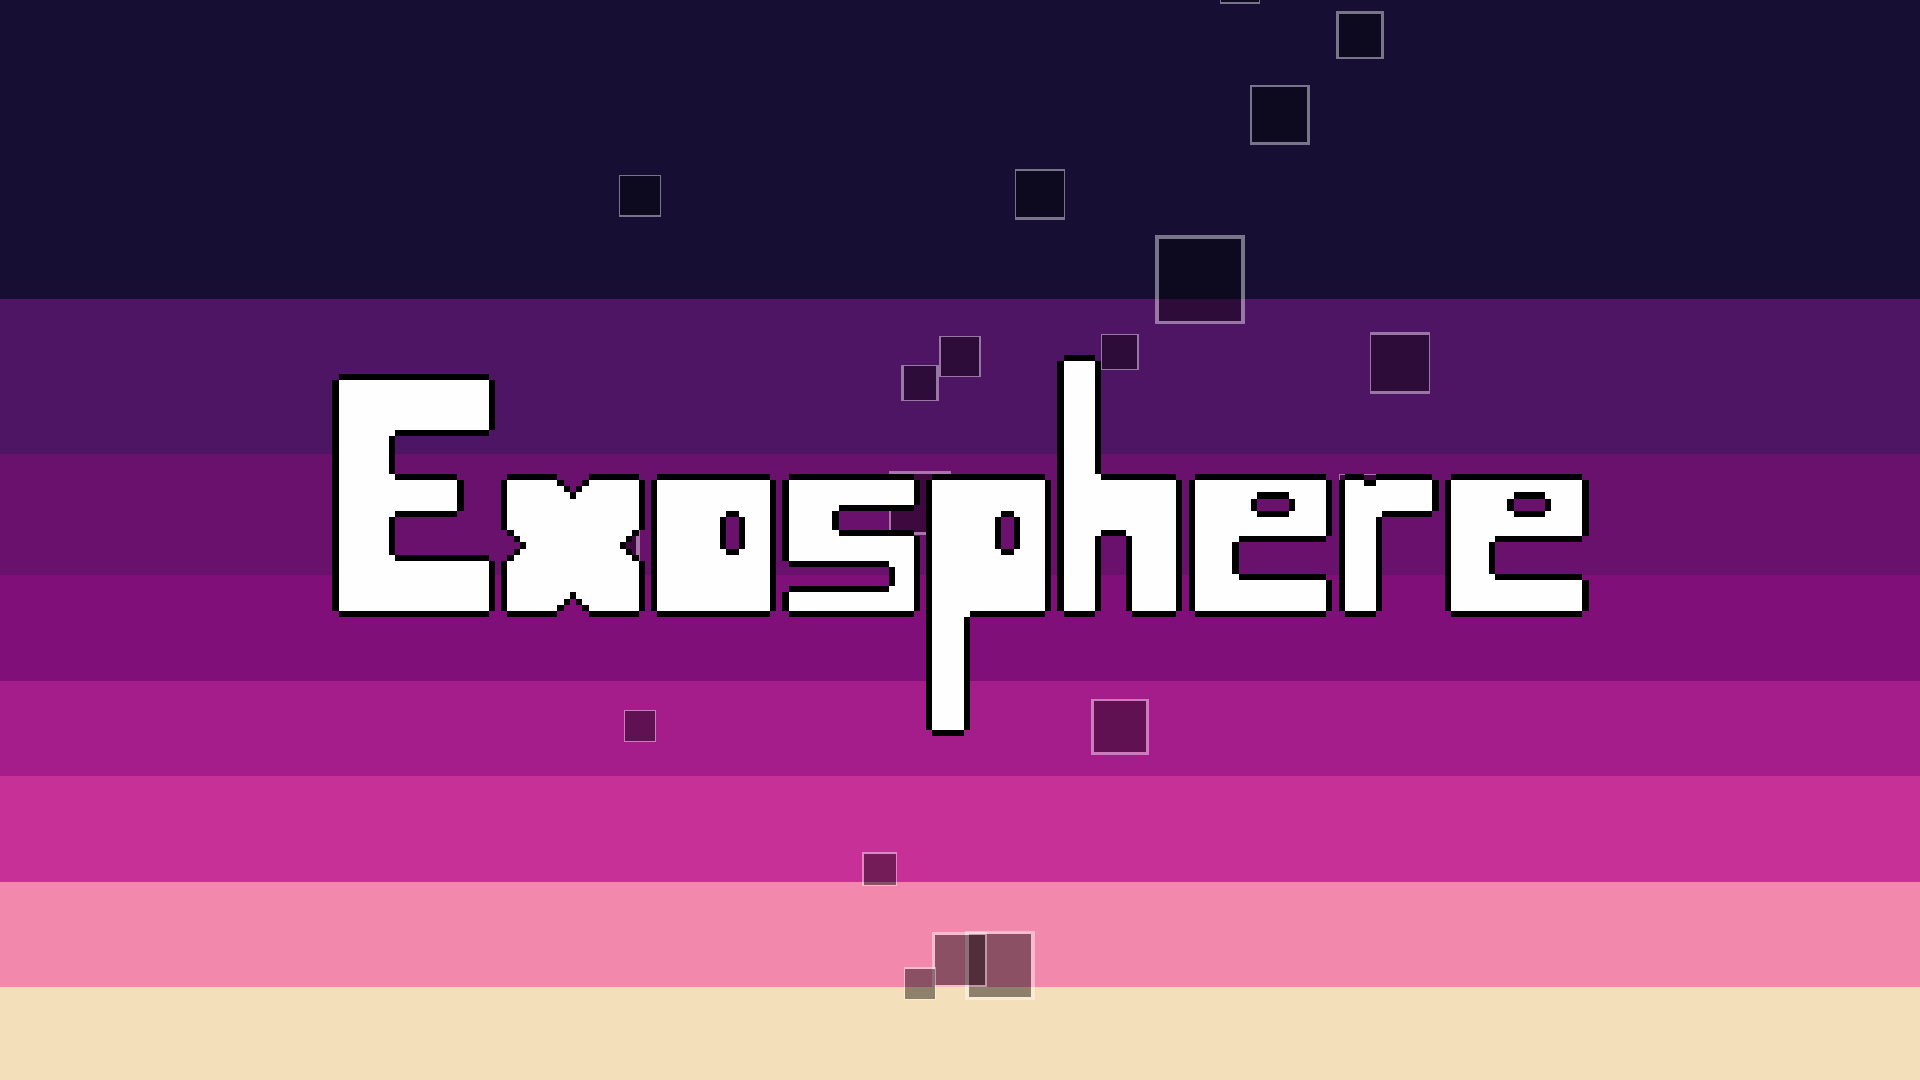 exosphere